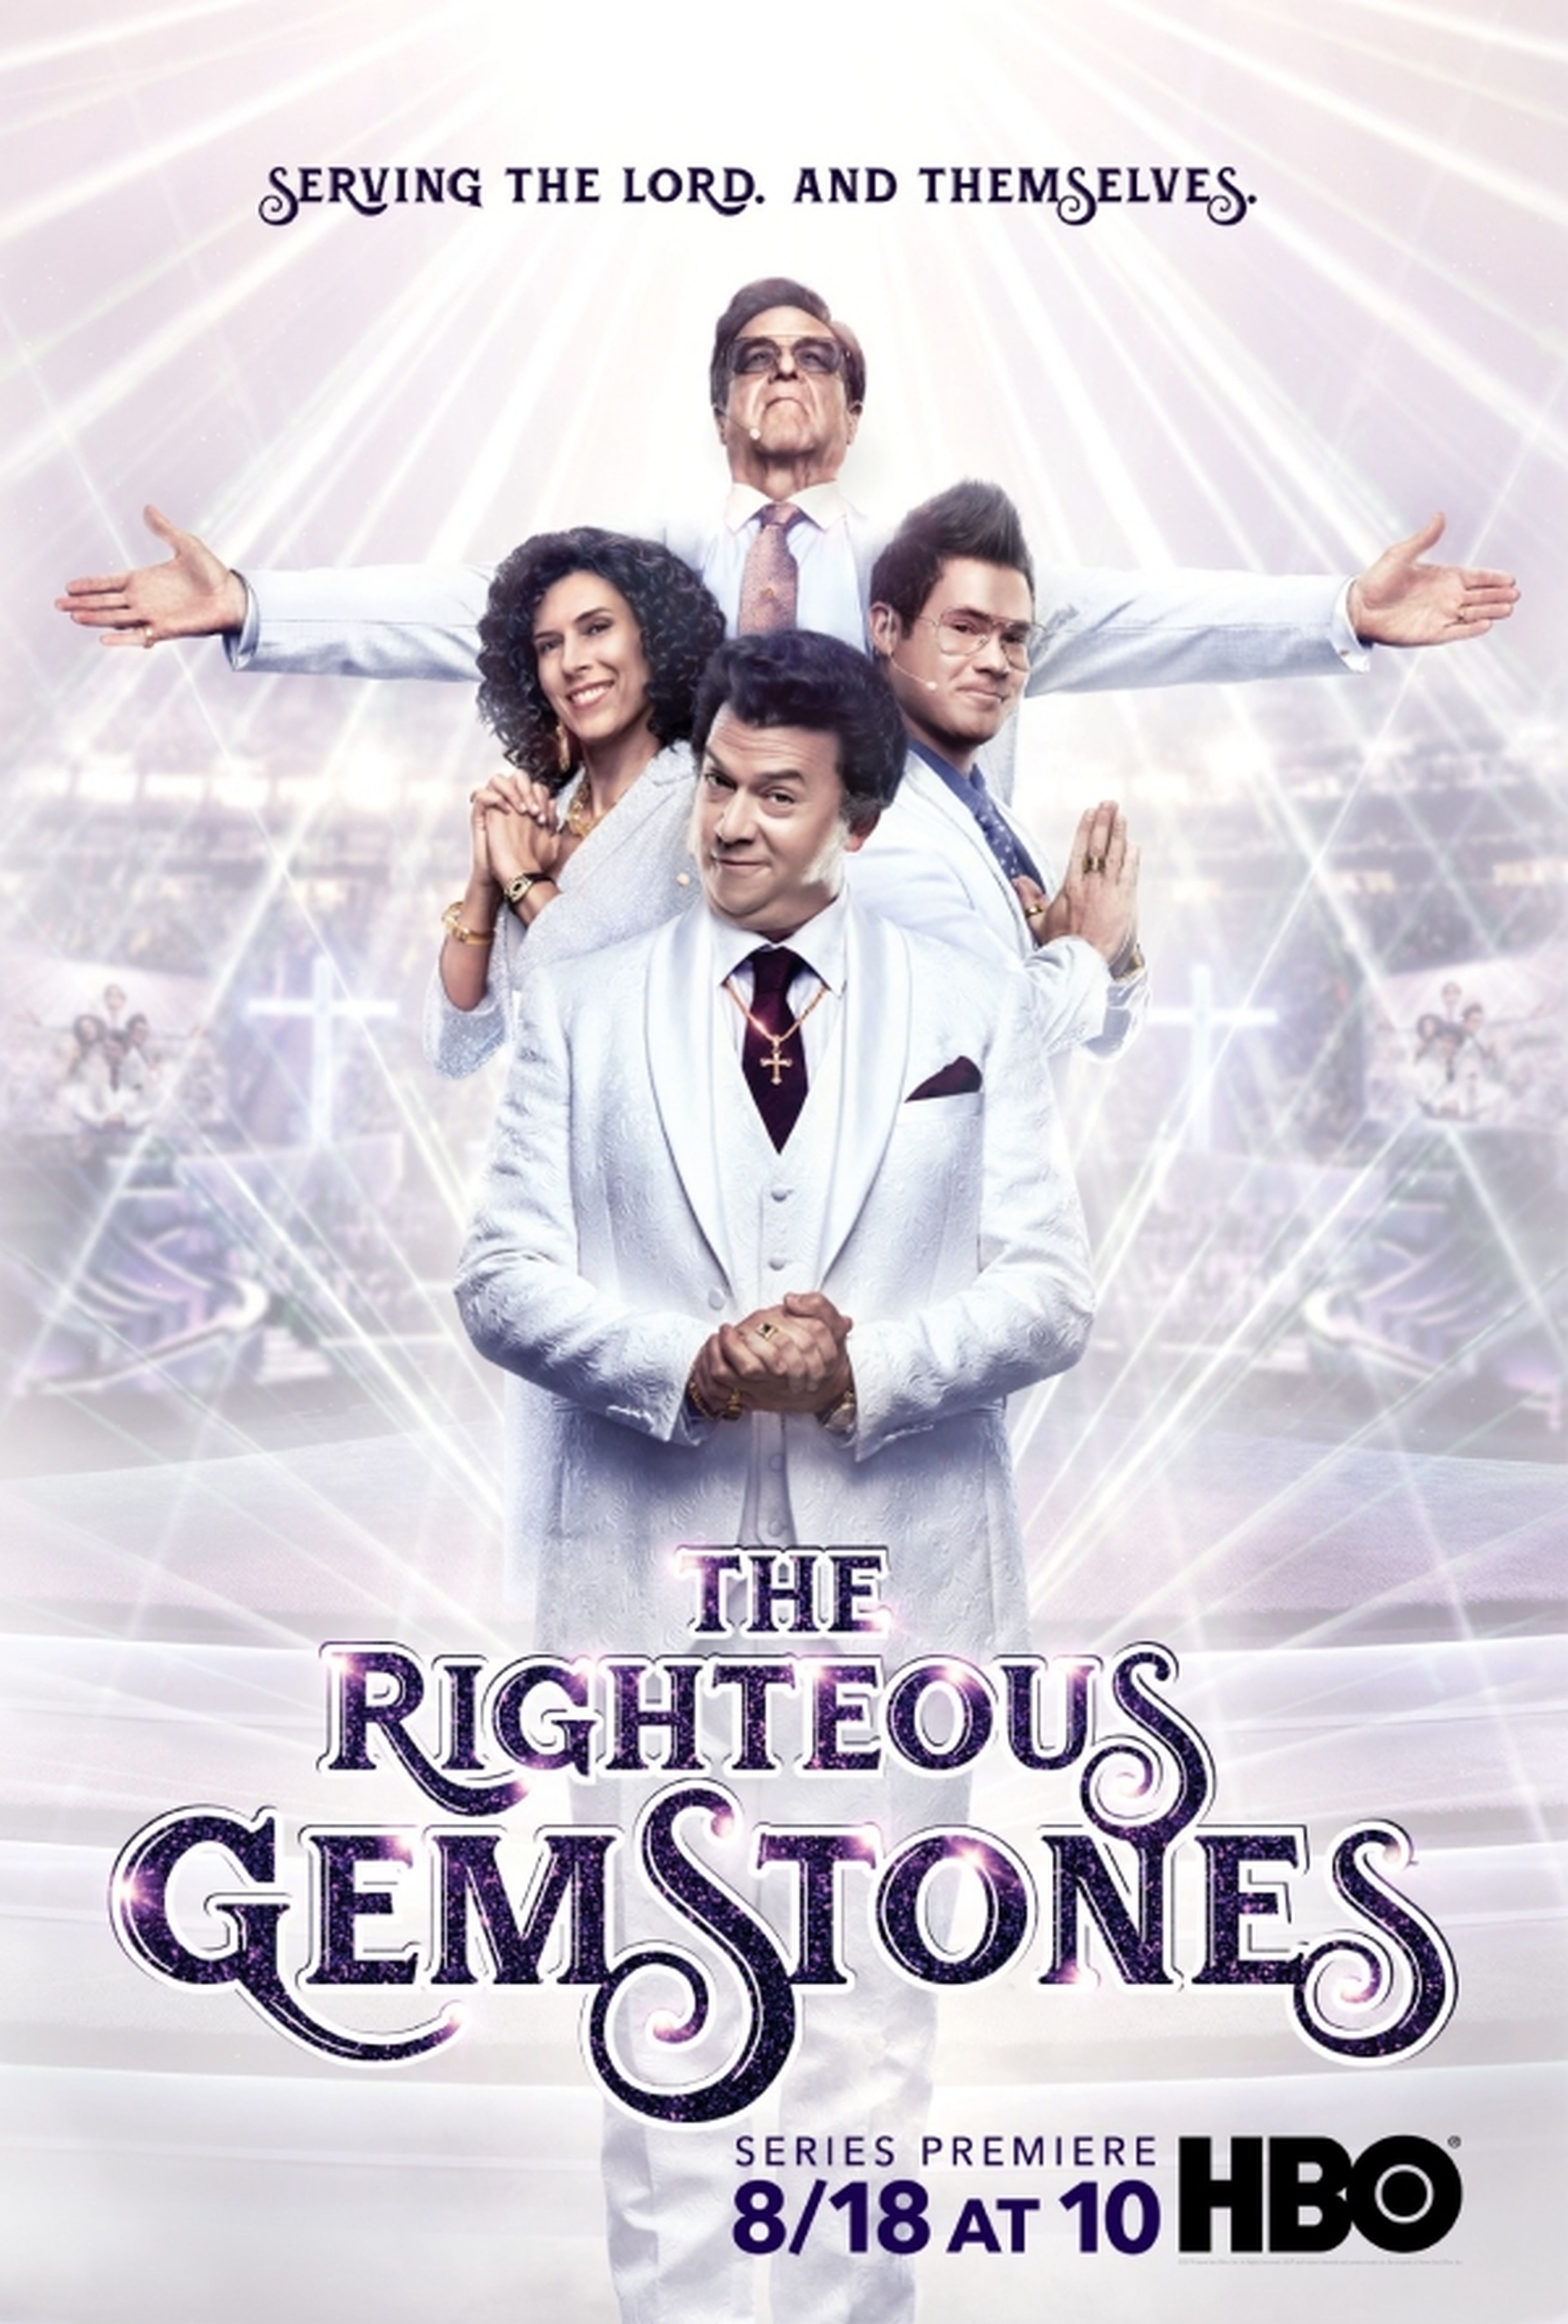 HBO estrena la serie de comedia The Righteous Gemstones - Cine y Tv -  Cultura 